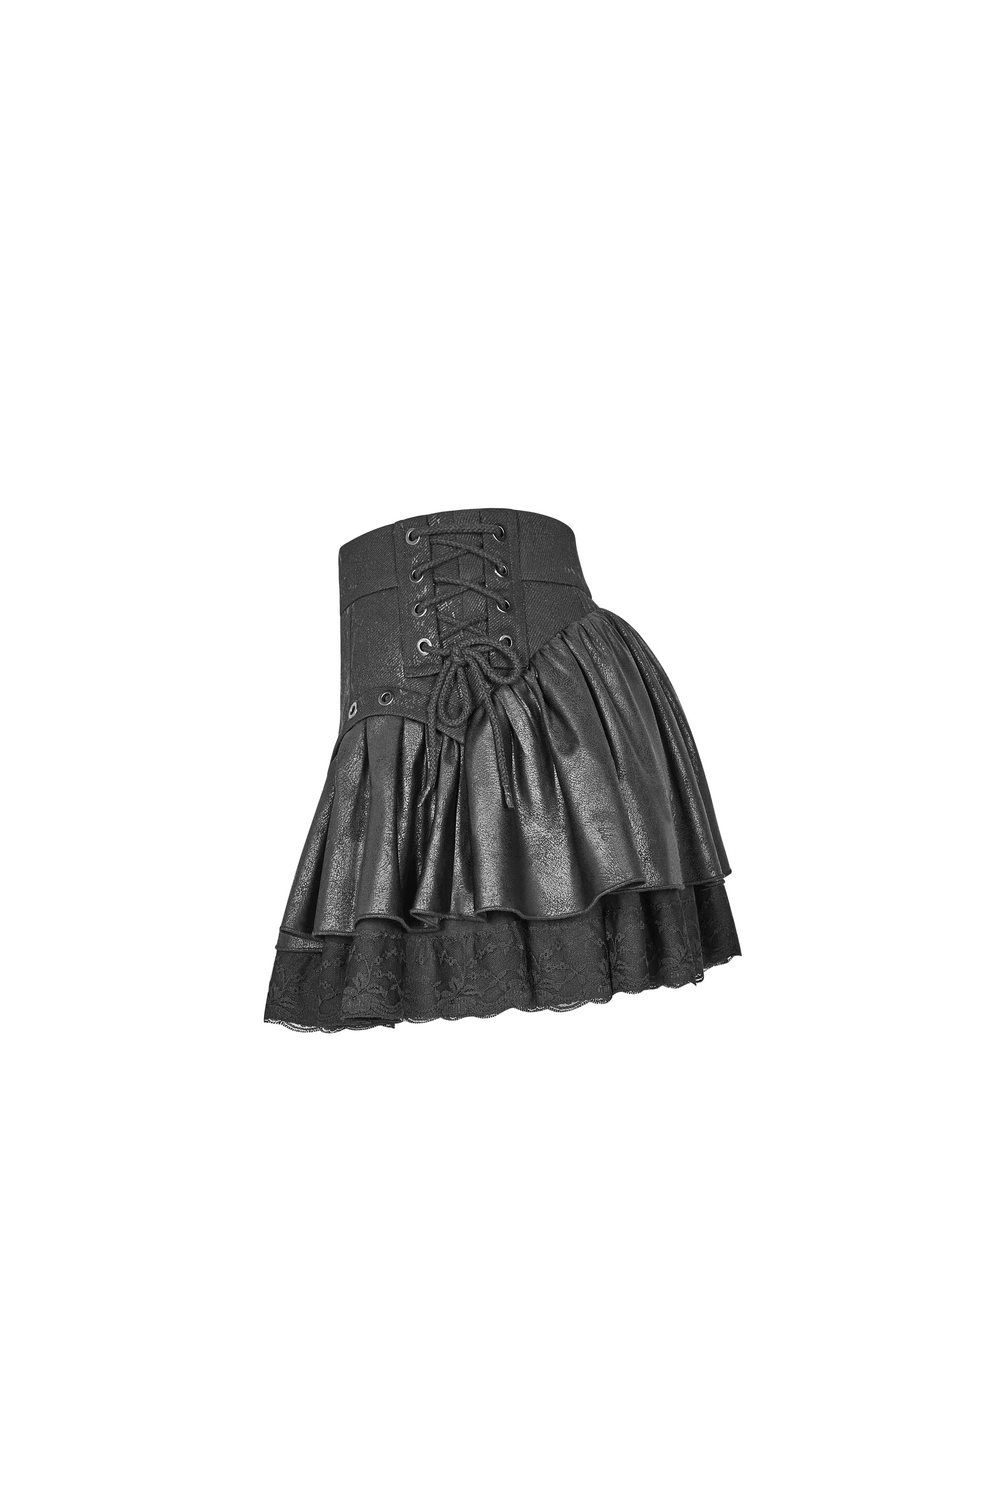 Stylish Punk Rave Mini Skirt with Ruffles and Lace